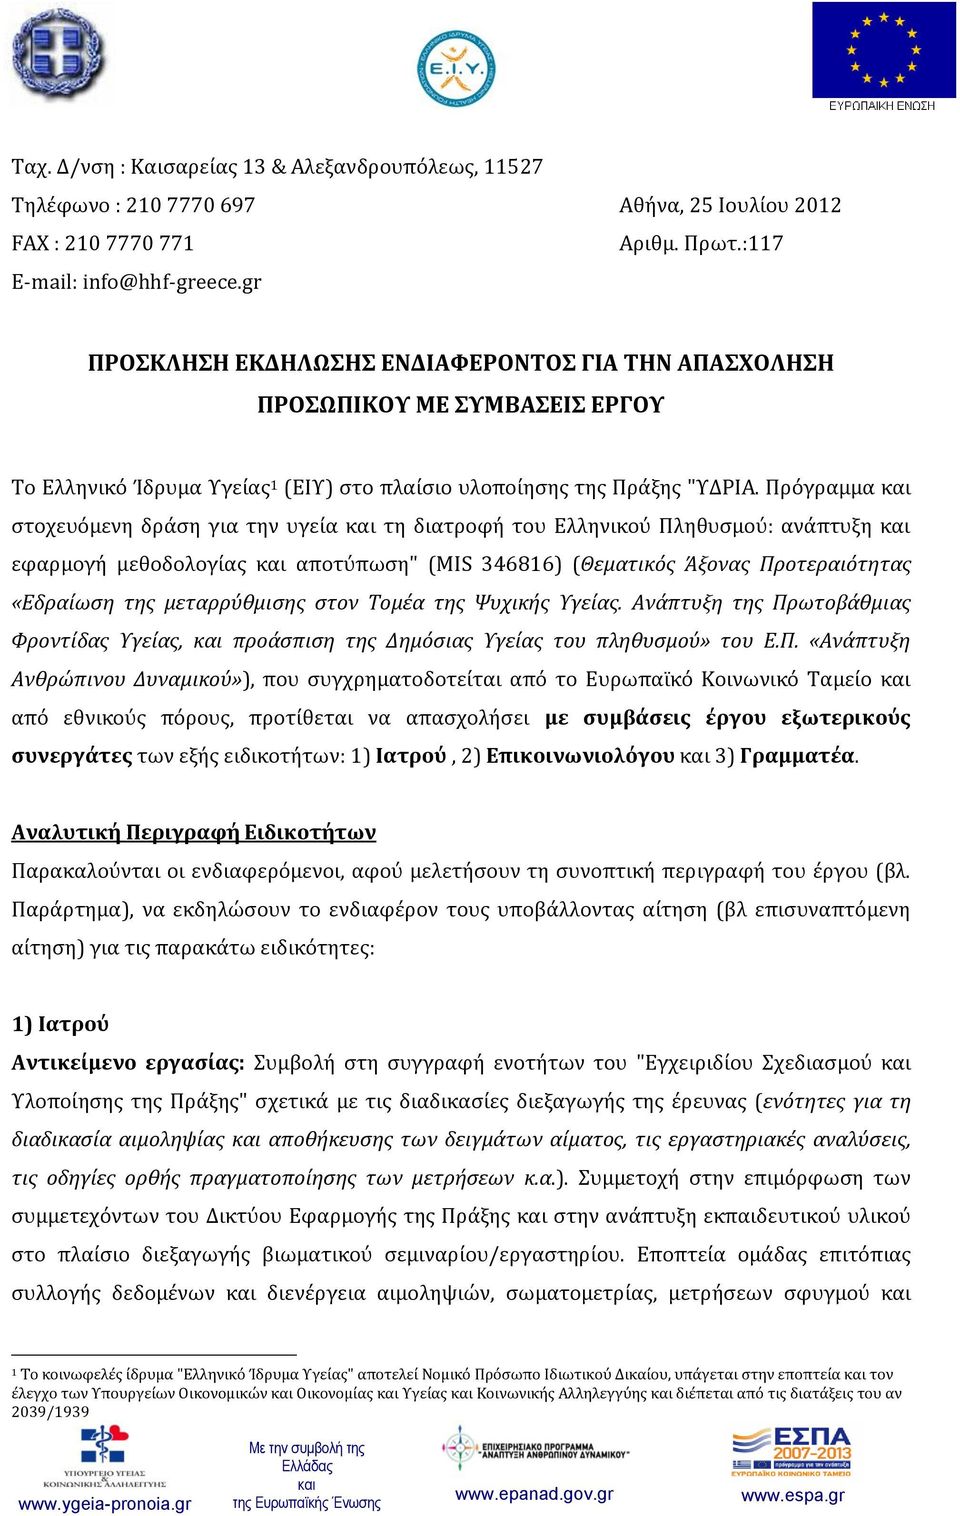 Πρόγραμμα στοχευόμενη δράση για την υγεία τη διατροφή του Ελληνικού Πληθυσμού: ανάπτυξη εφαρμογή μεθοδολογίας αποτύπωση" (MΙS 346816) (Θεματικός Άξονας Προτεραιότητας «Εδραίωση της μεταρρύθμισης στον